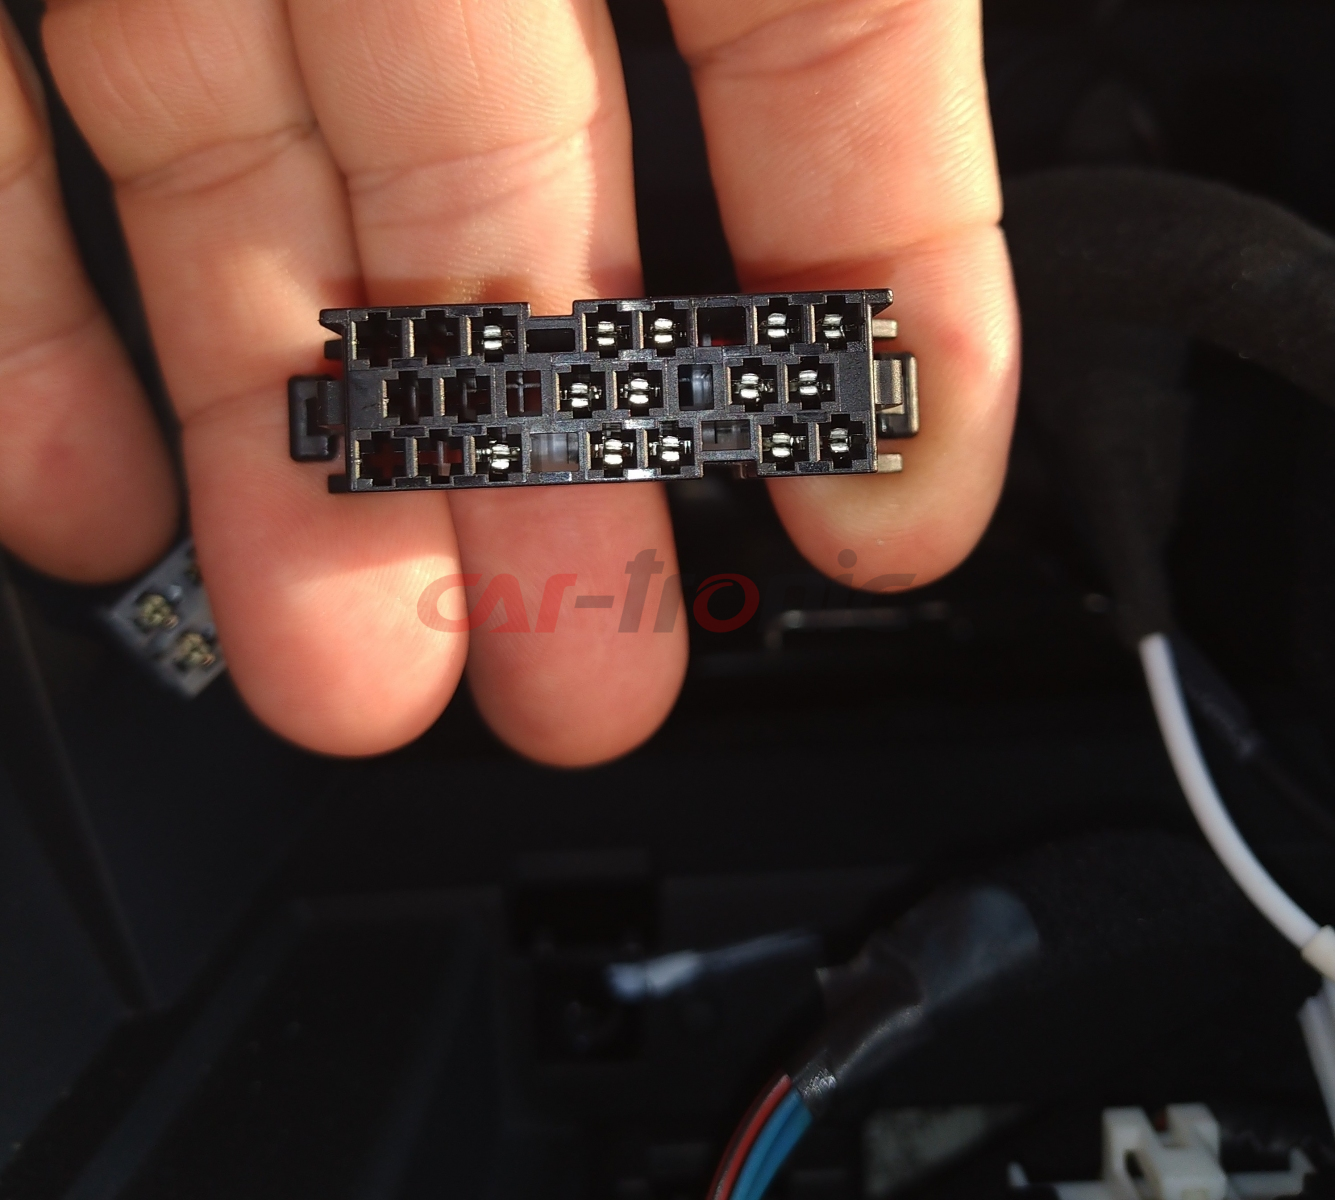 Adapter do sterowania z kierownicy Hyundai i35 2010 - 2015. Fabryczna nawigacja, wzmacniacz i kamera cofania CTSHY013.2